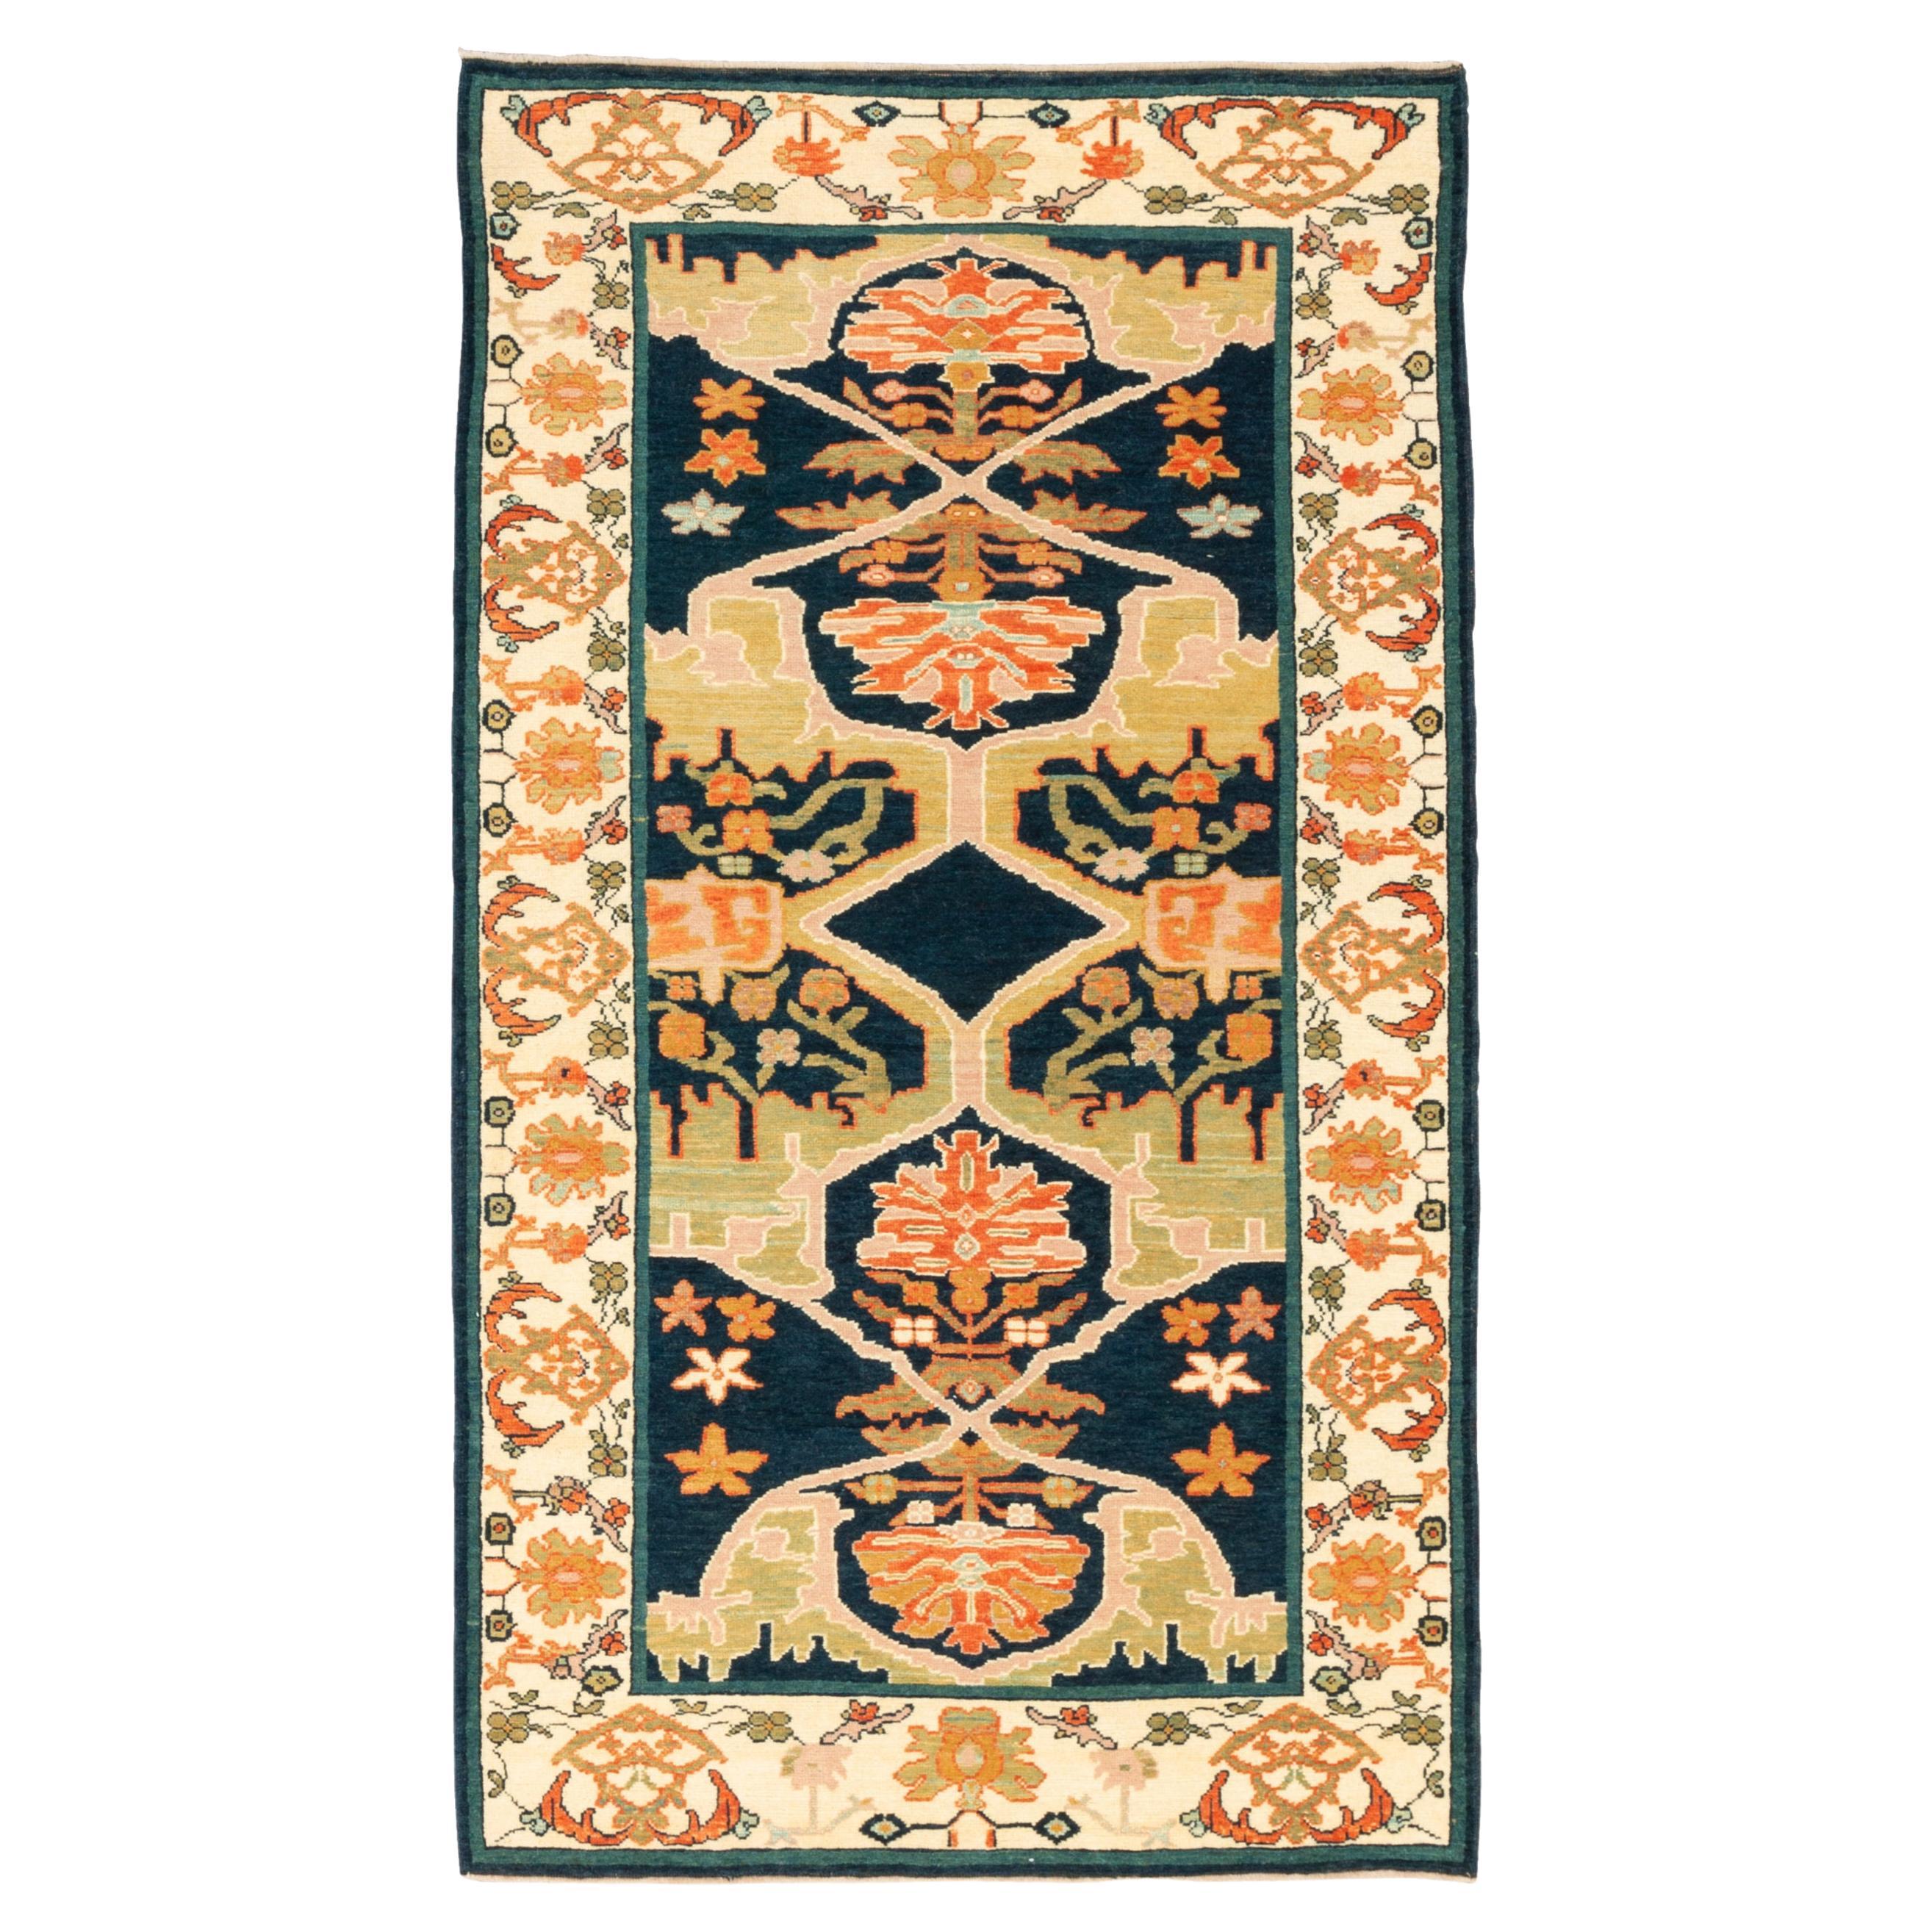 Ararat Rugs Gerous Bidjar Wagireh Rug Antique Persian Design Carpet Natural Dyed For Sale